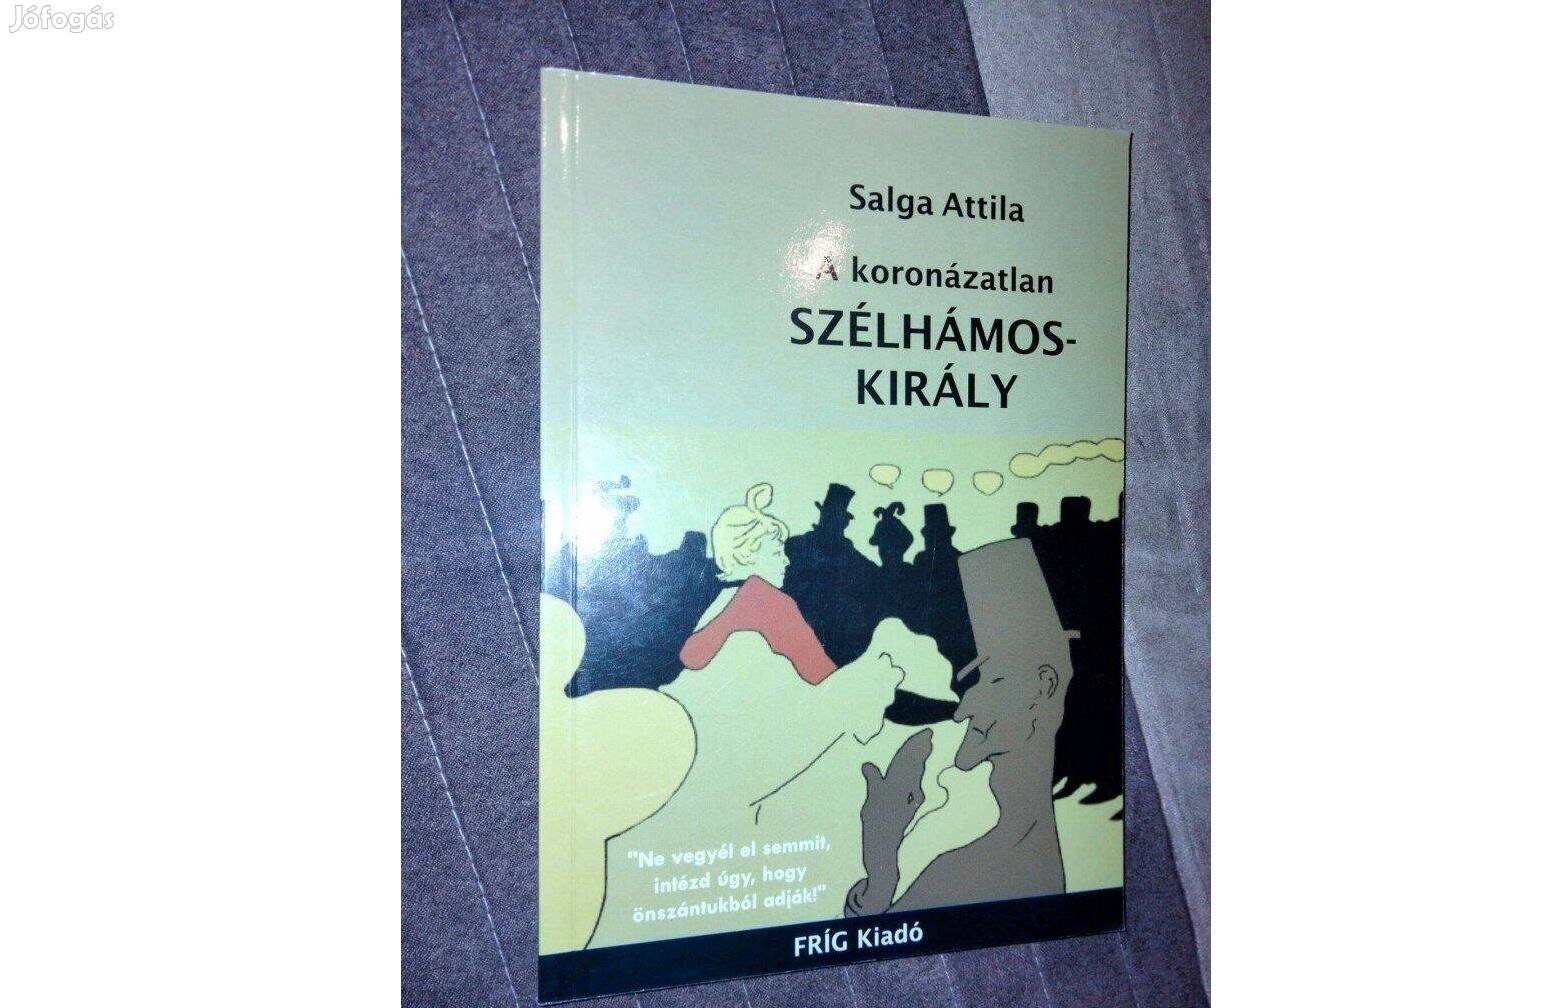 Salga Attila : A koronázatlan szélhámoskirály